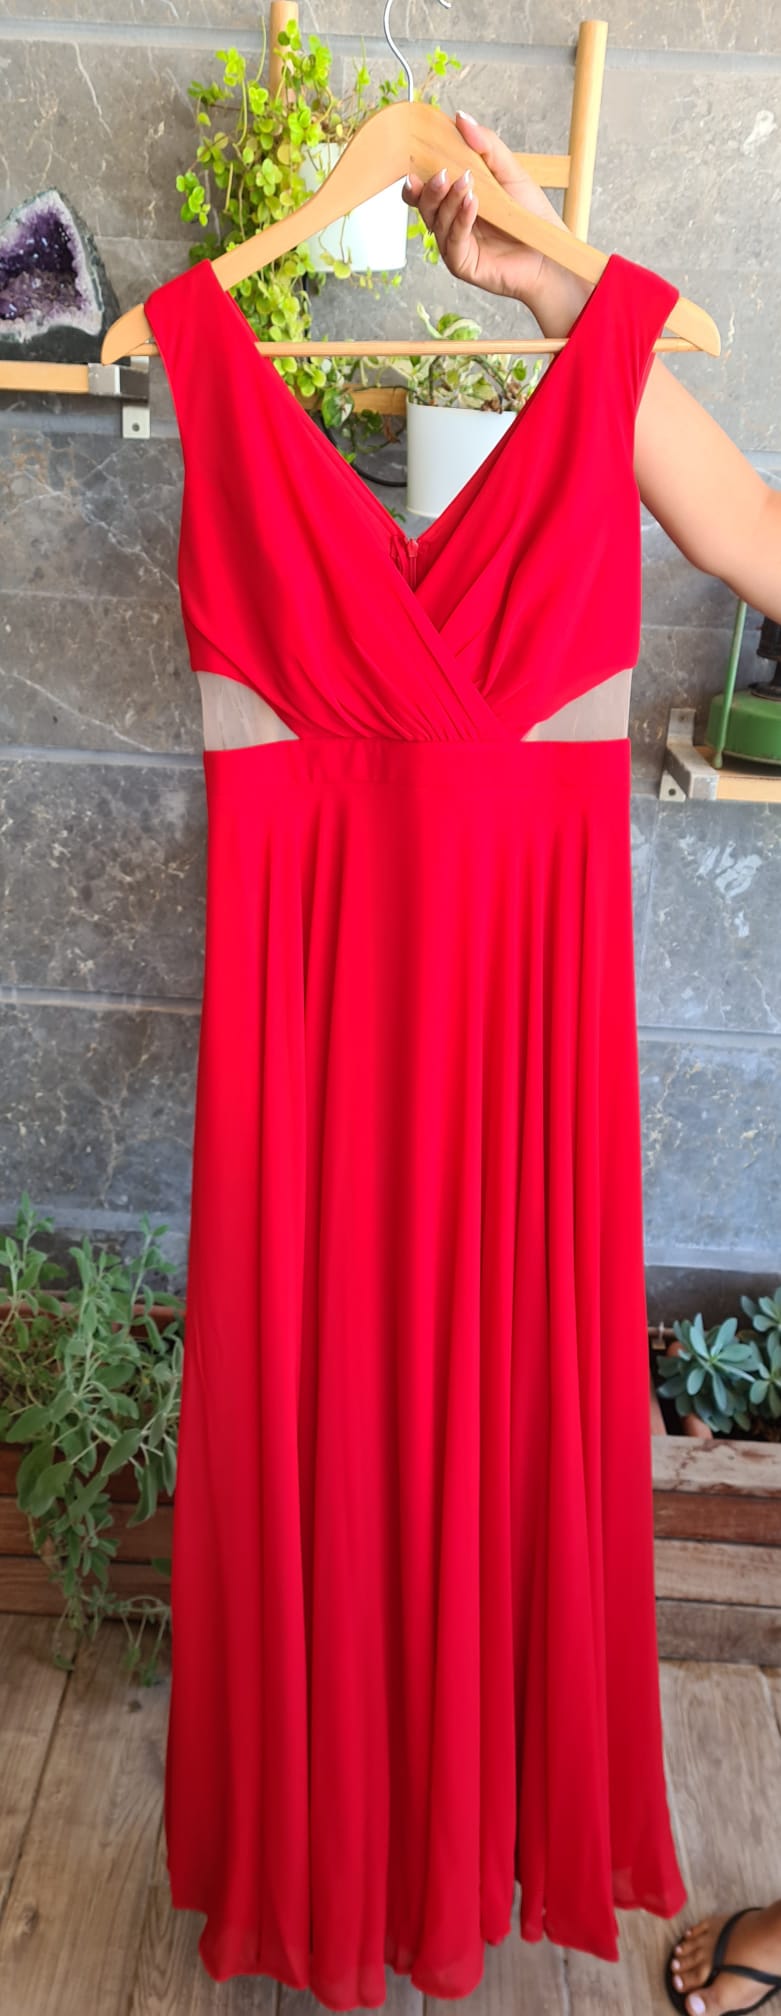 תמונות נוספות של שמלת ערב שיפון אדומה